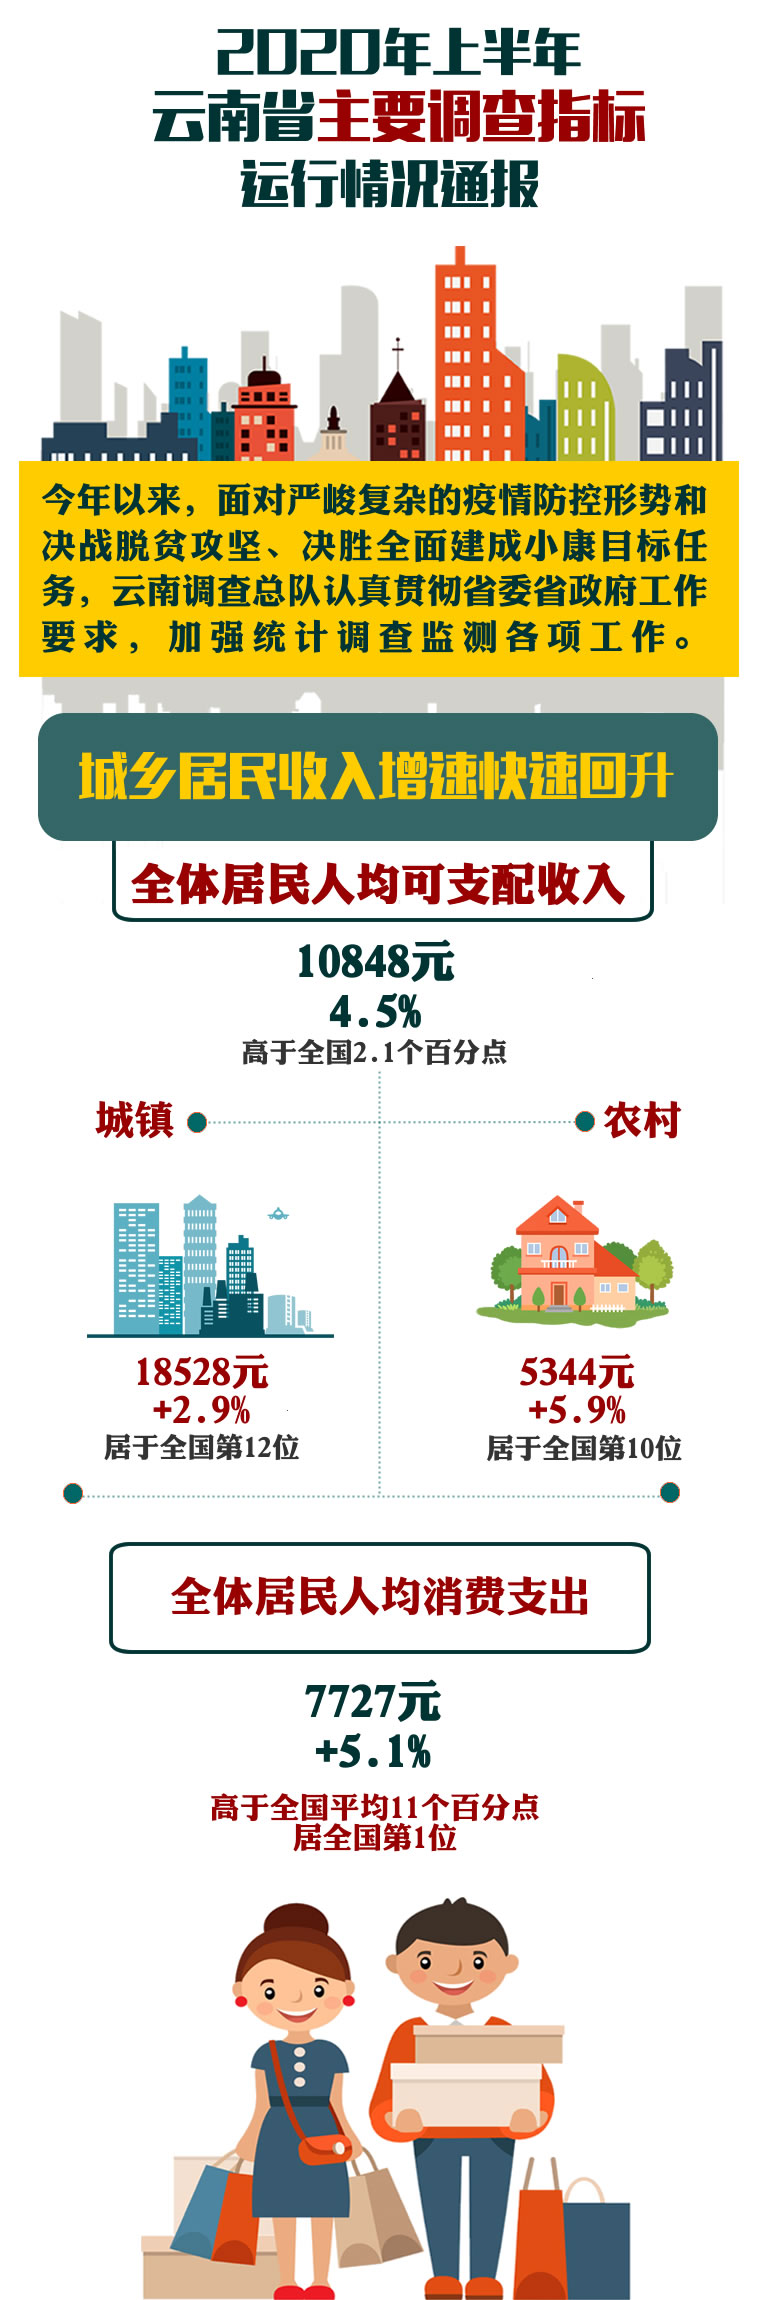 上半年云南全省居民收入恢复增长 价格运行总体平稳